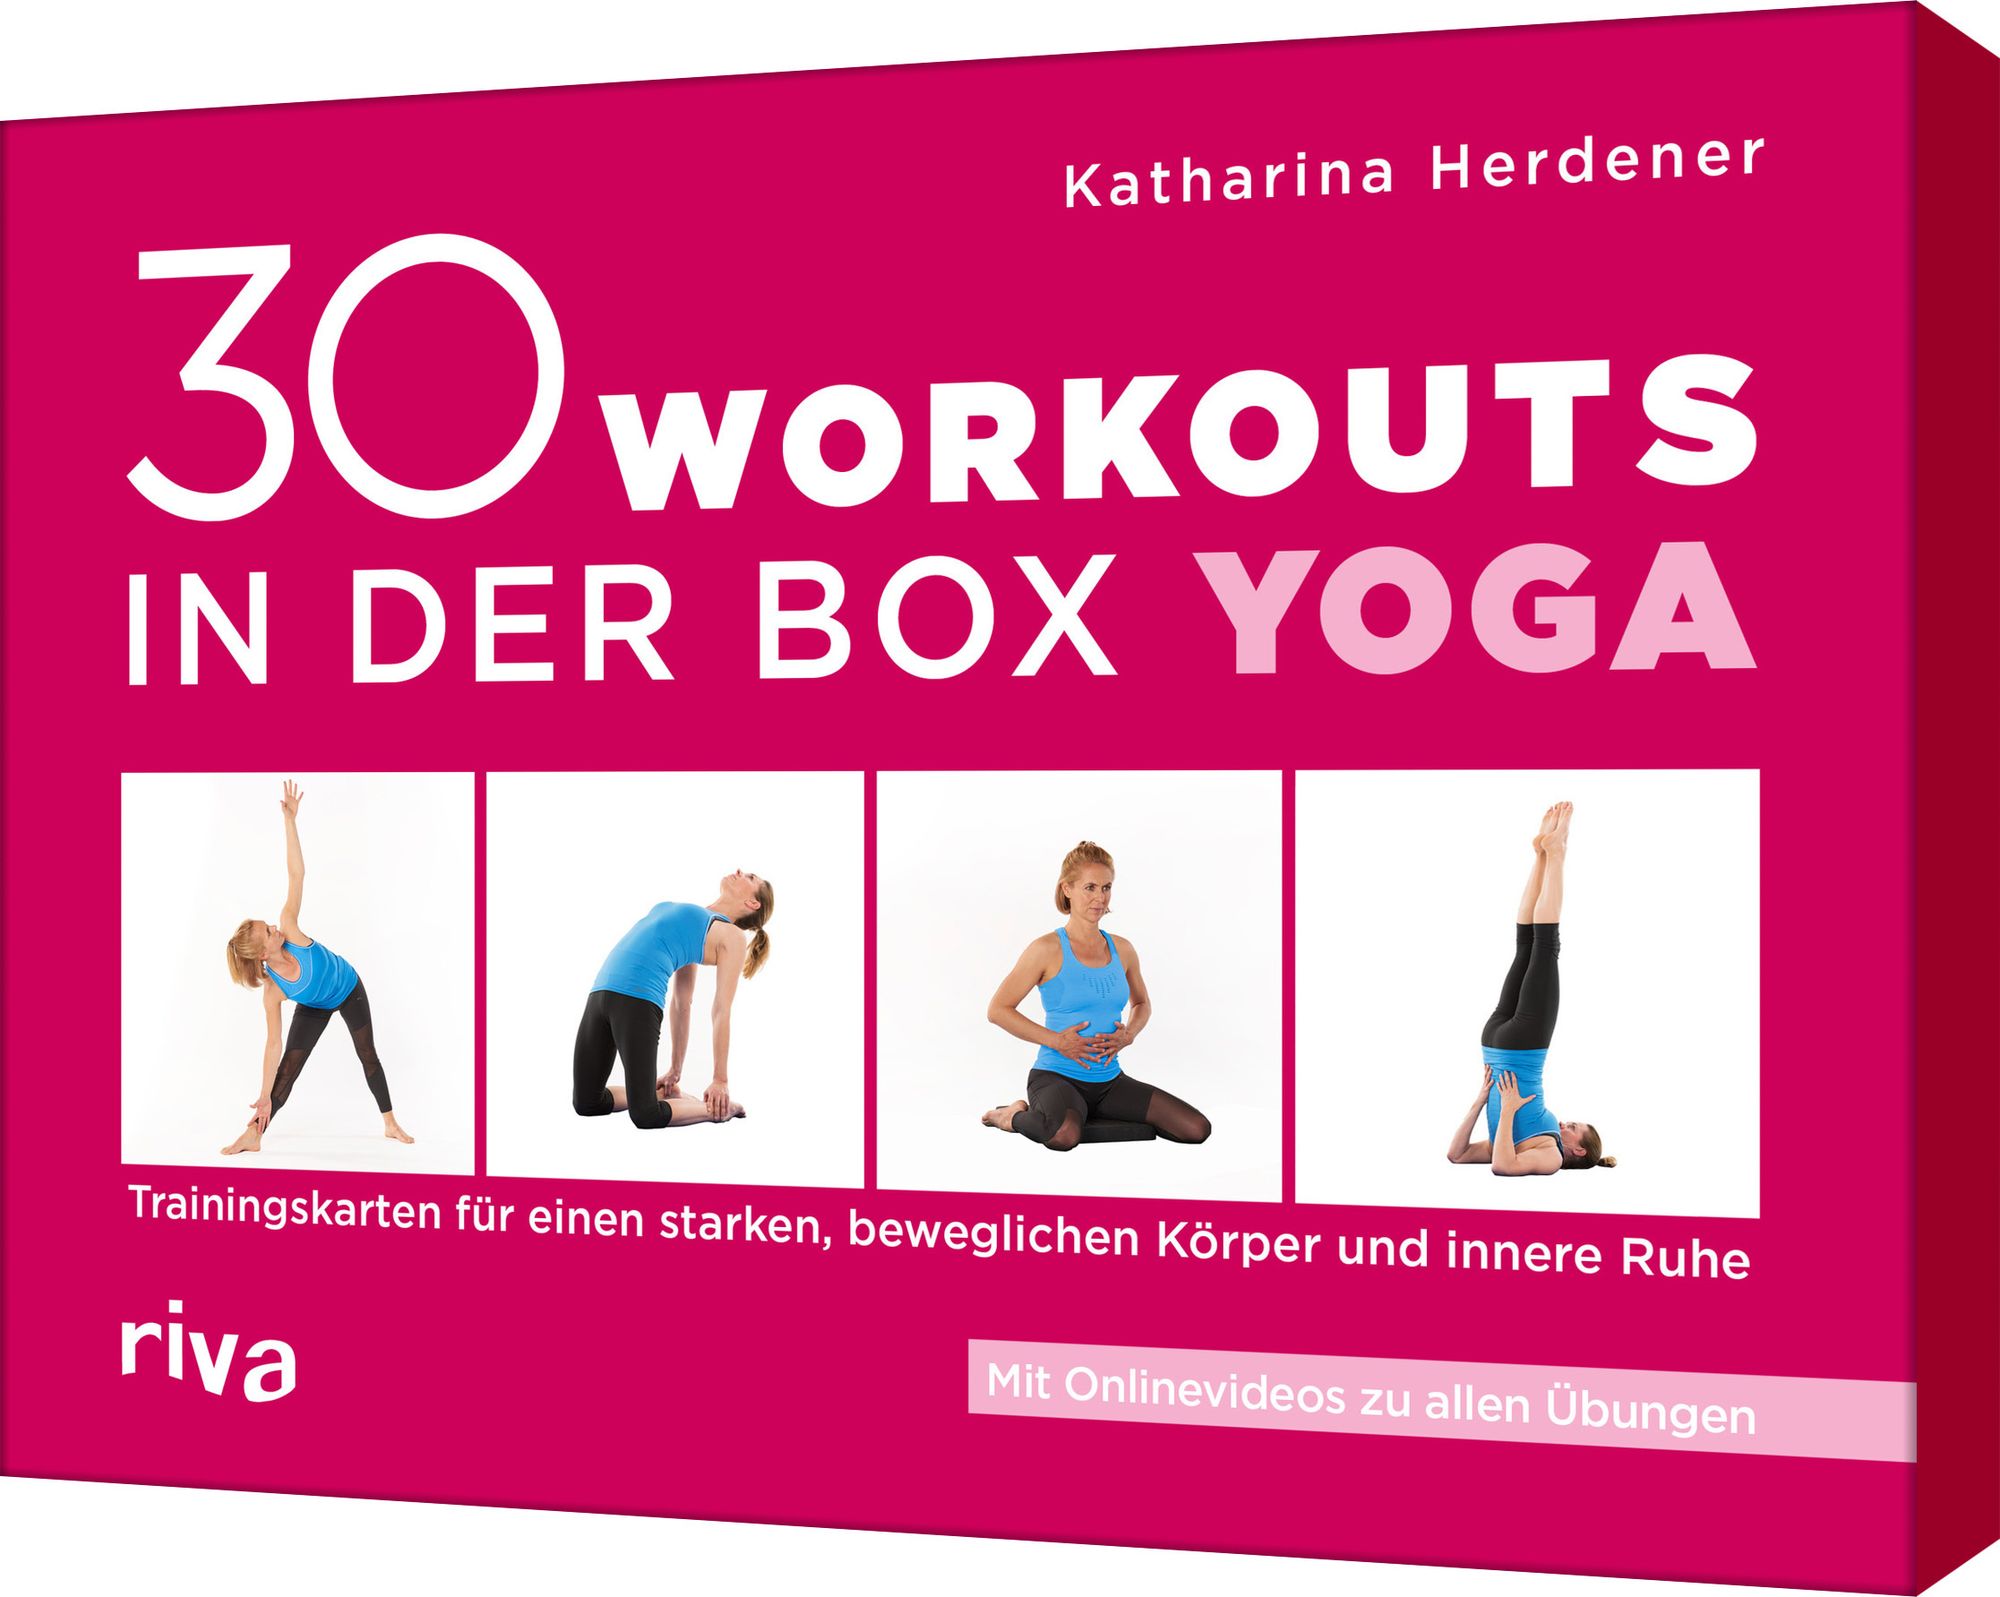 Workouts in - \'30 der Box Buch Yoga\' – \'Katharina Herdener\' von - \'978-3-7423-2293-7\'